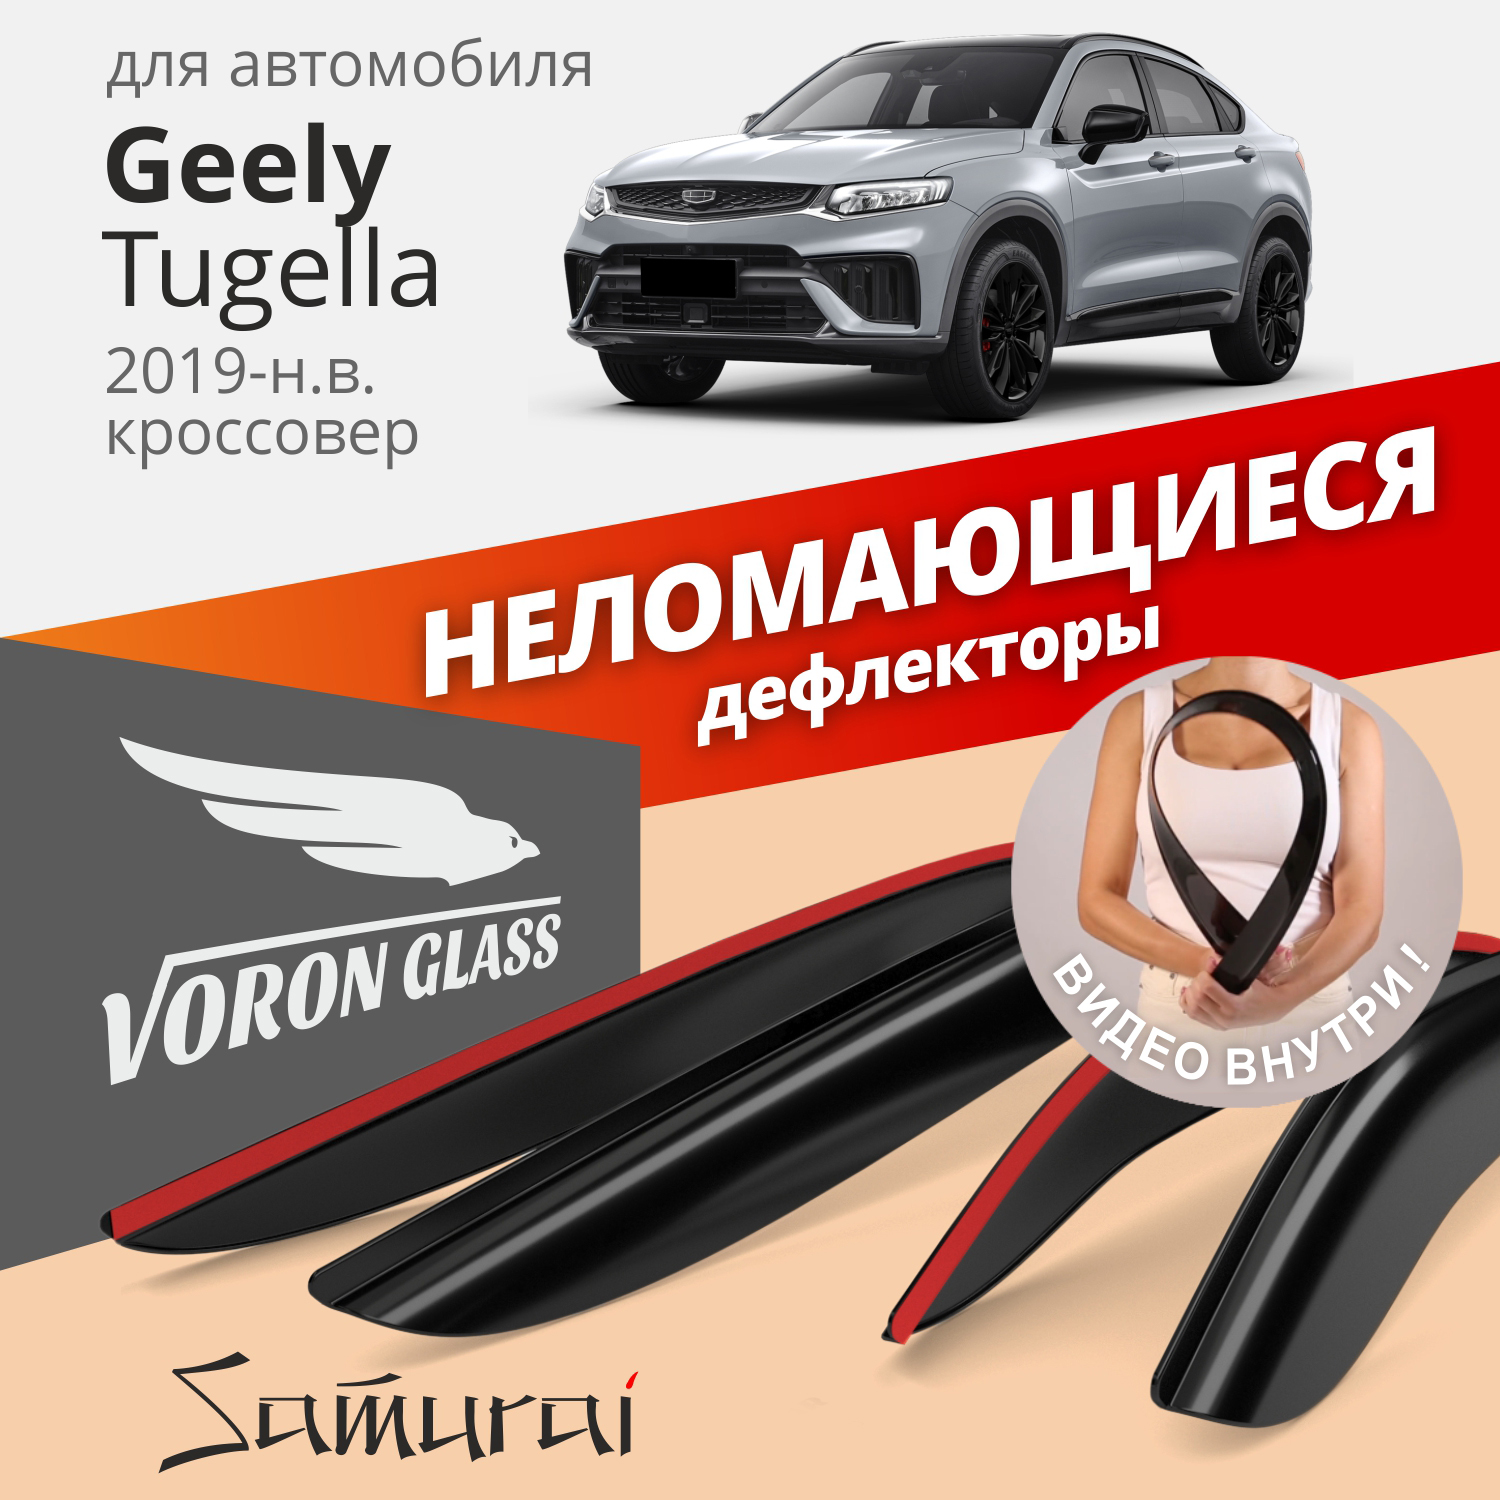 Дефлекторы Voron Glass Samurai для Geely Tugella 2019-н.в./кроссовер/накладные/к-т 4 шт.